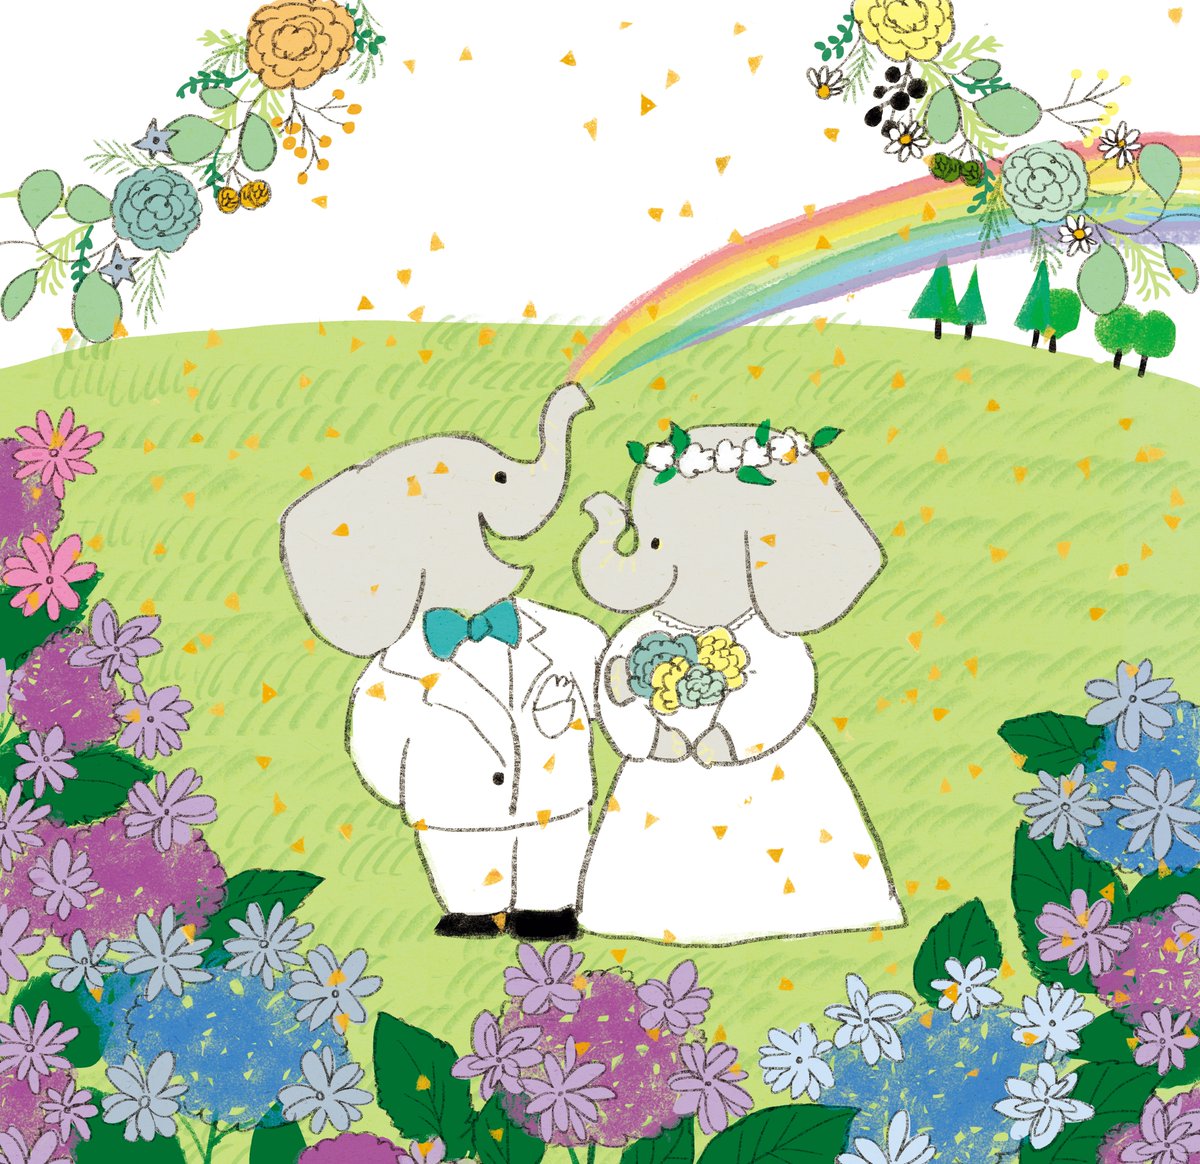 「#虹の日 」|ももろ　4／20発売絵本「パンダのパクパクきせつのごはん」のイラスト